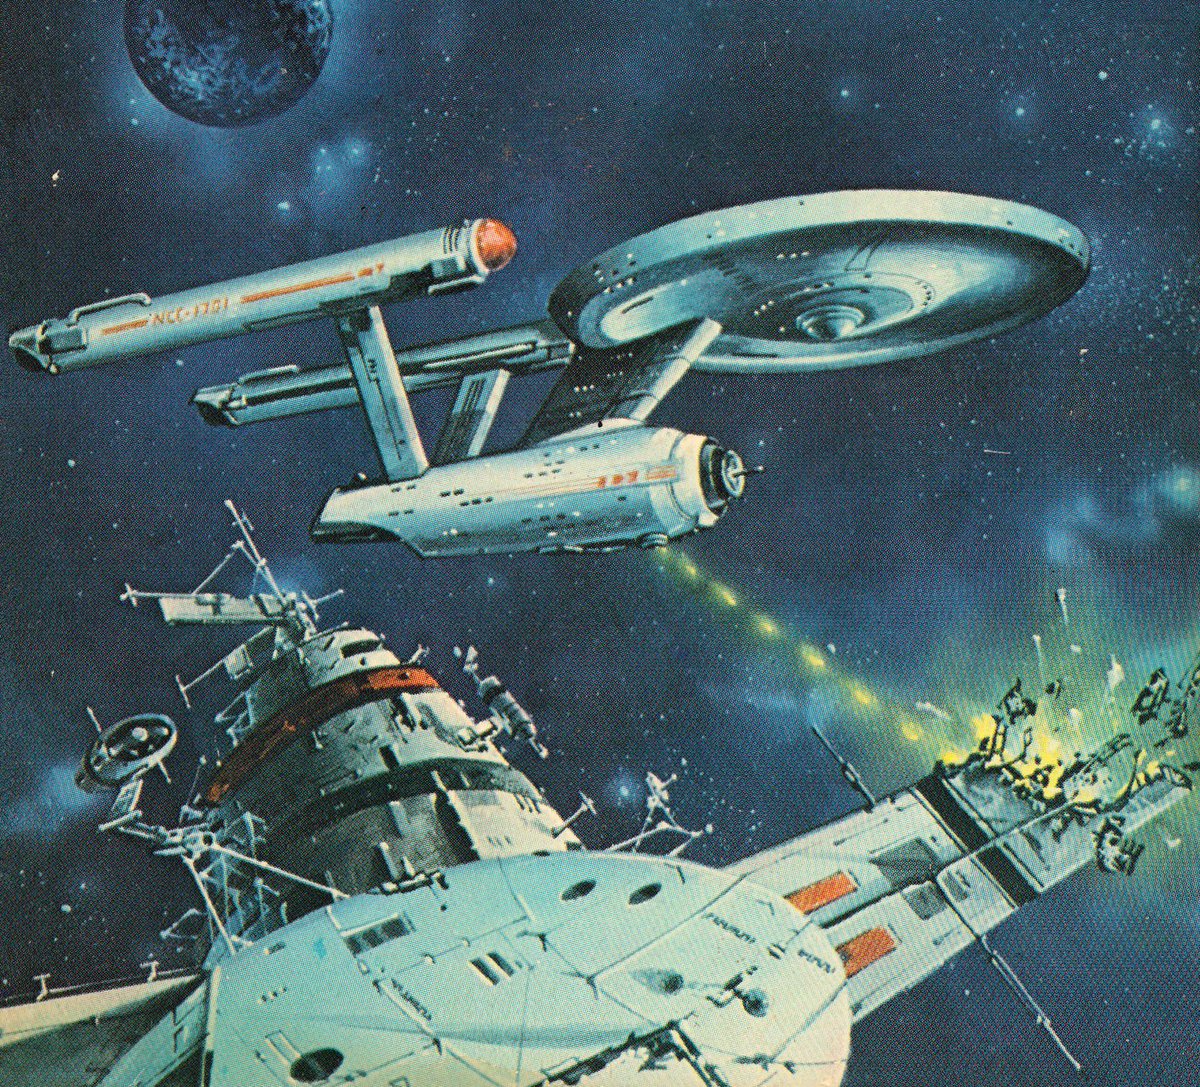 Eddie Jones cover art for 'Trek to Madworld' by Stephen Goldin, 1979.